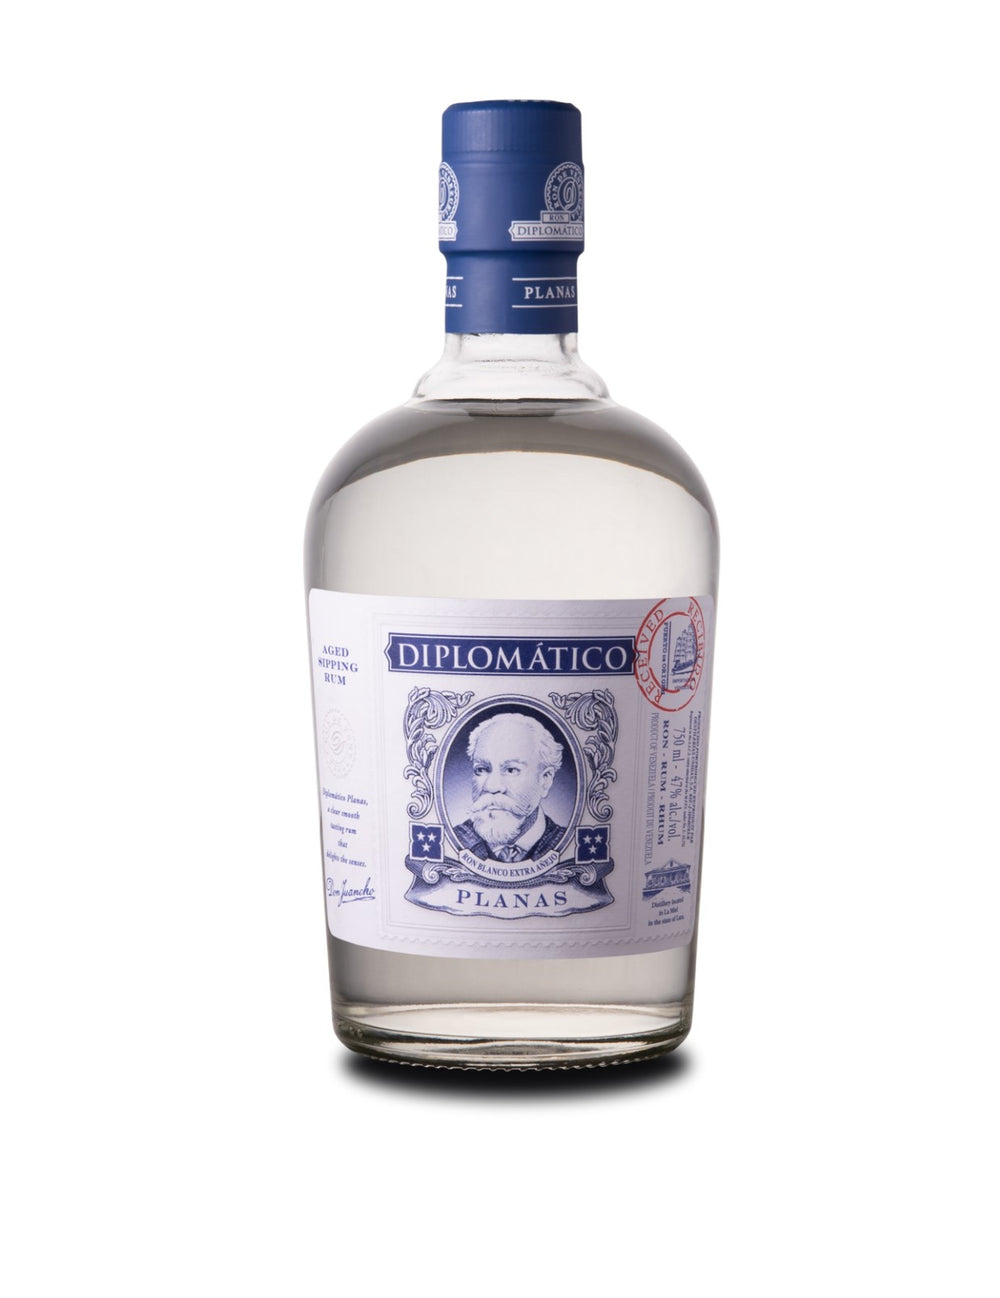 Diplomatico Planas Premium Rum -750ml